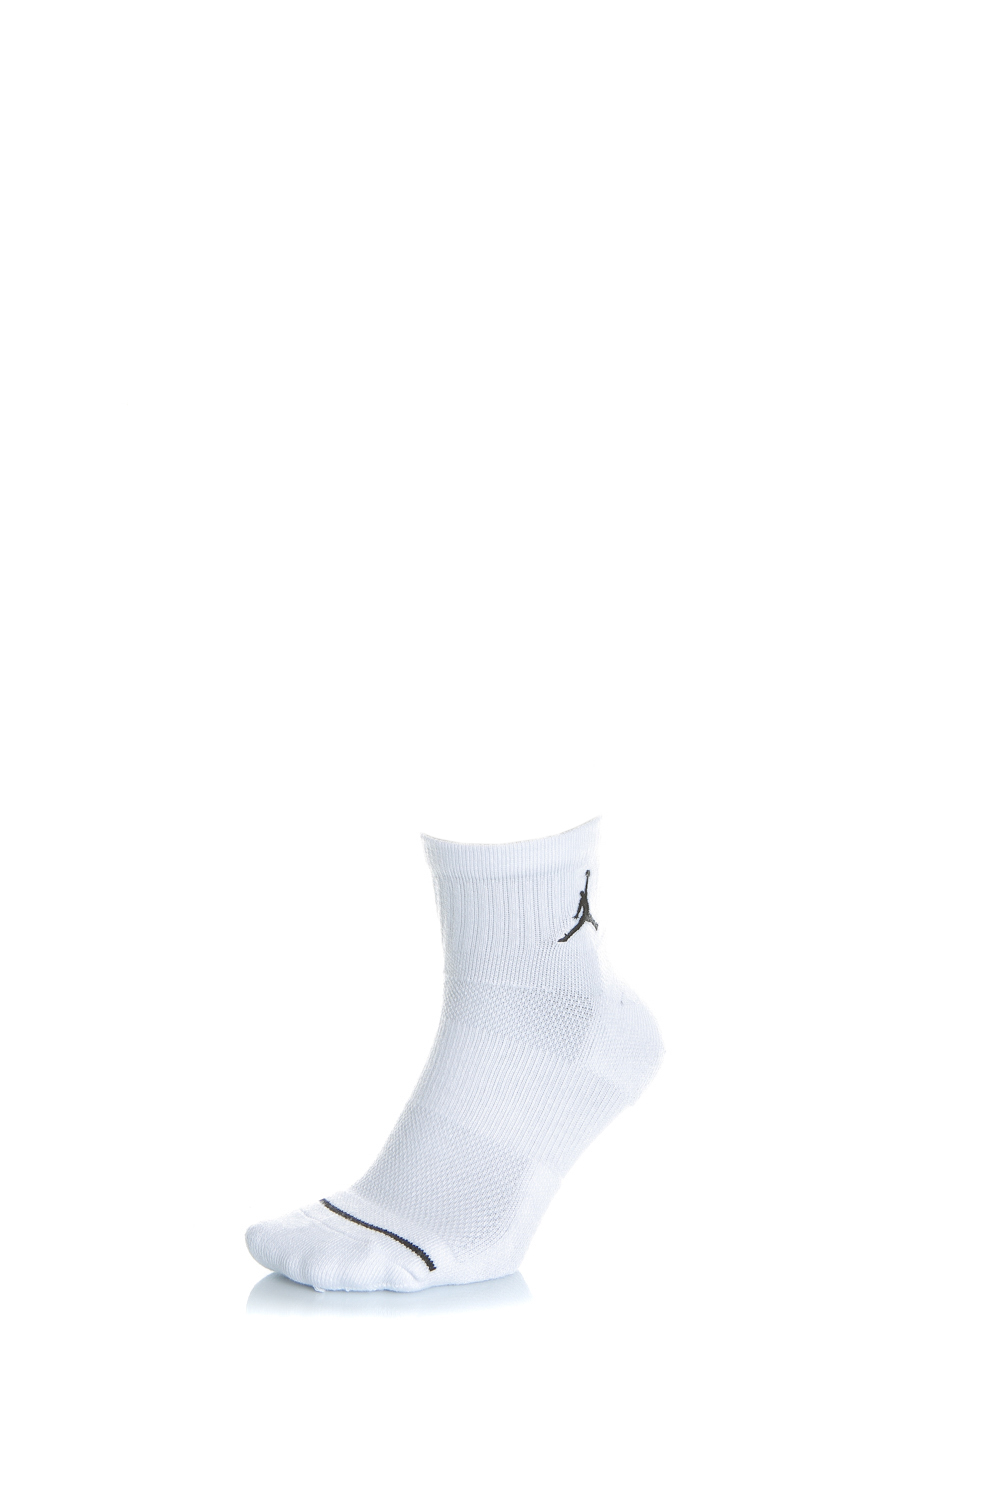 NIKE – Σετ unisex κάλτσες Nike JORDAN EVRY MAX ANKLE λευκές 1514212.1-0091